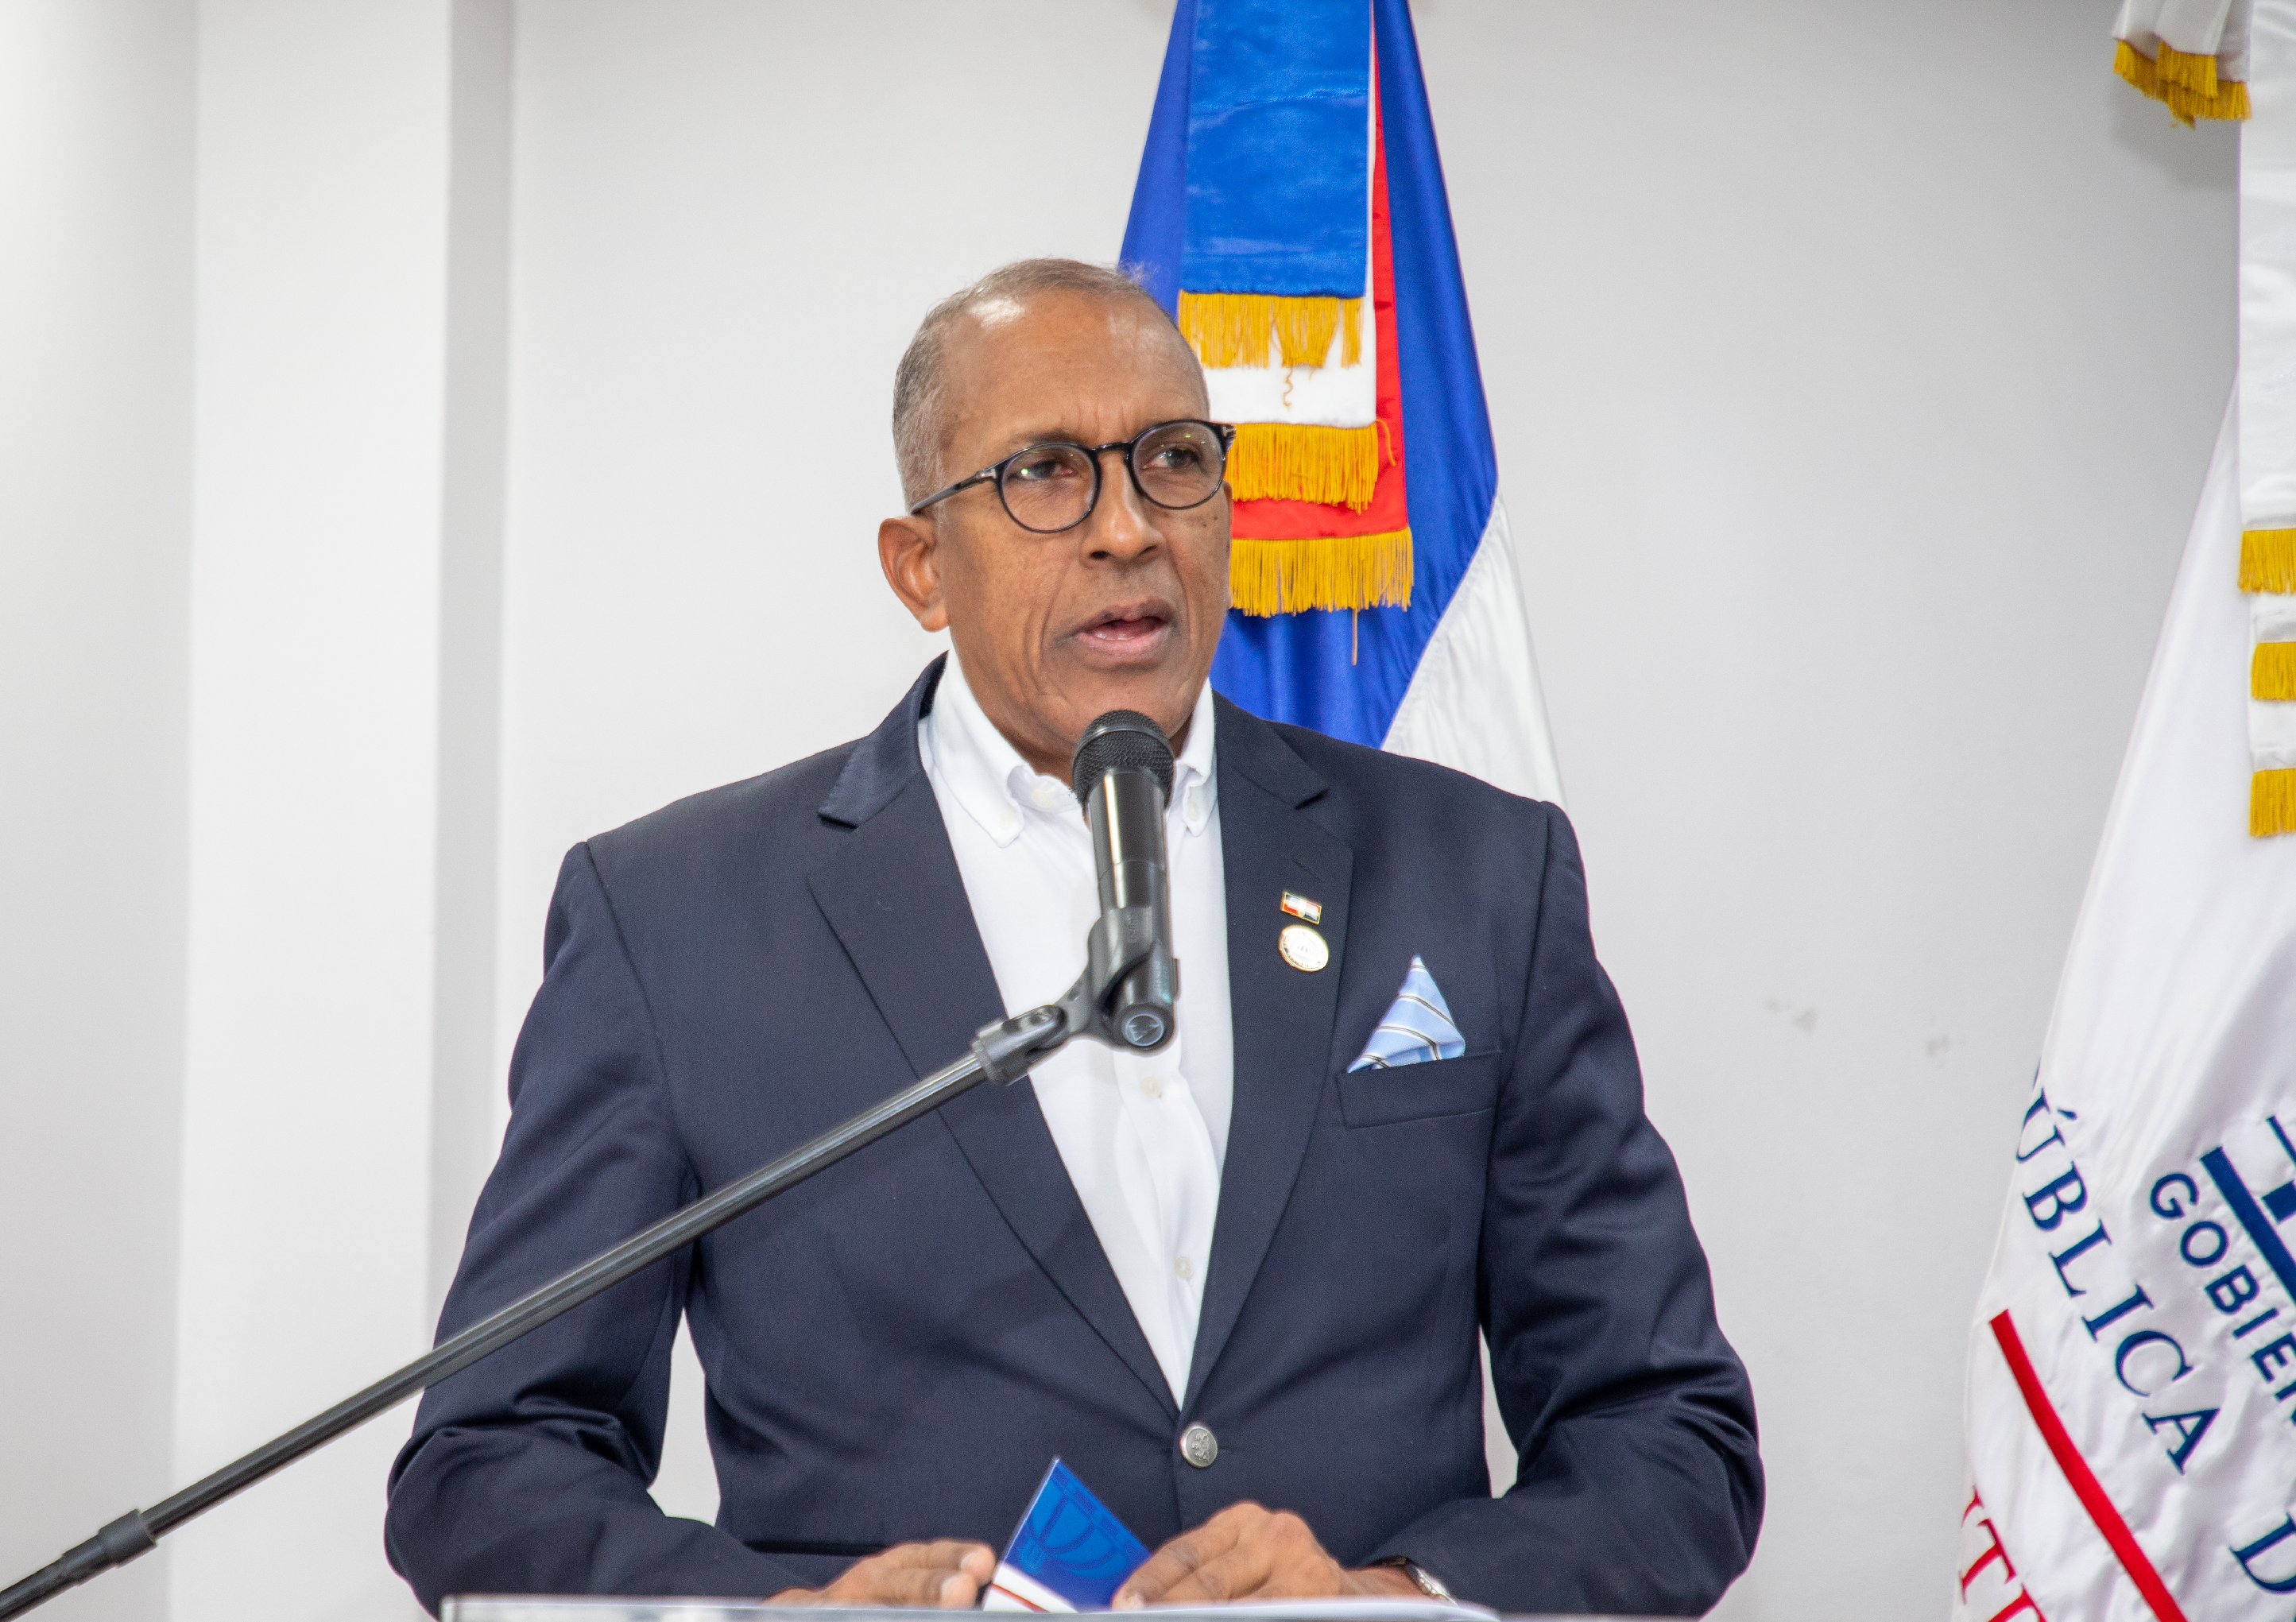 REPÚBLICA DOMINICANA: Contralor general plantea necesidad de fomentar cultura de la honradez desde las escuelas